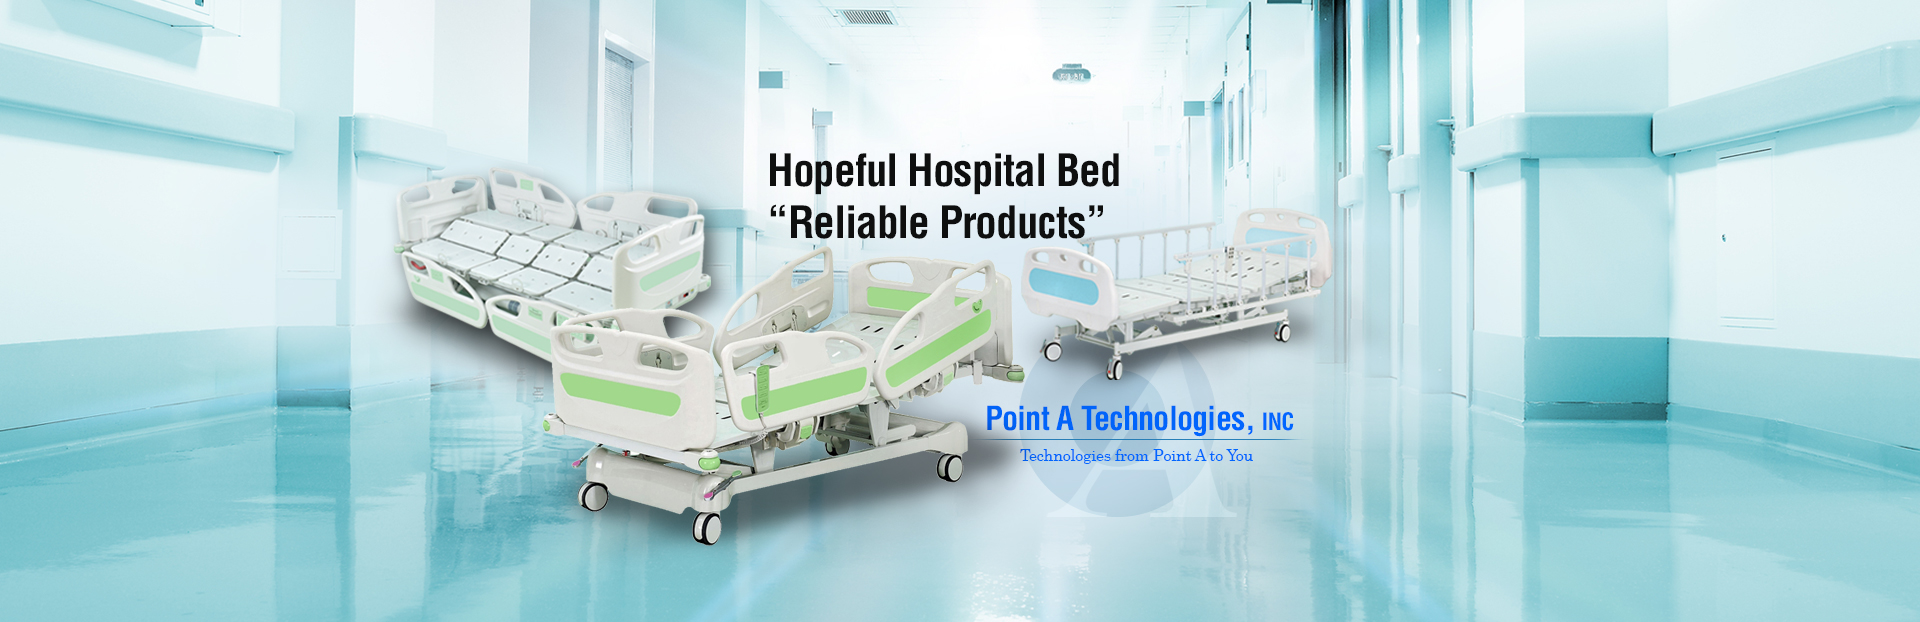 Hopeful Hospital Bed